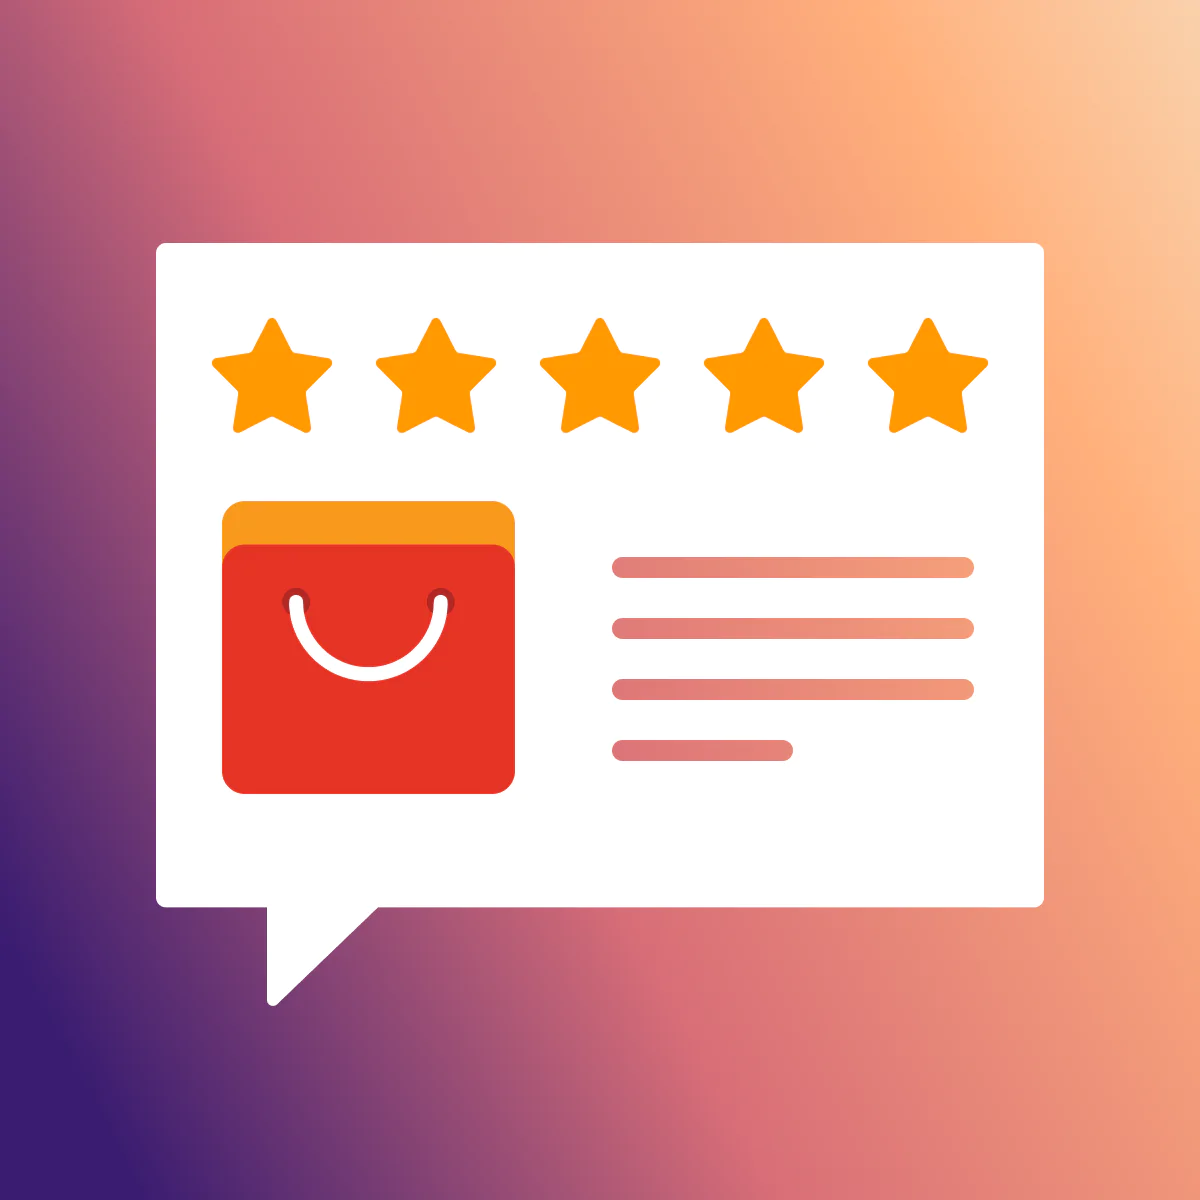  AliExpress Reviews by Reputon